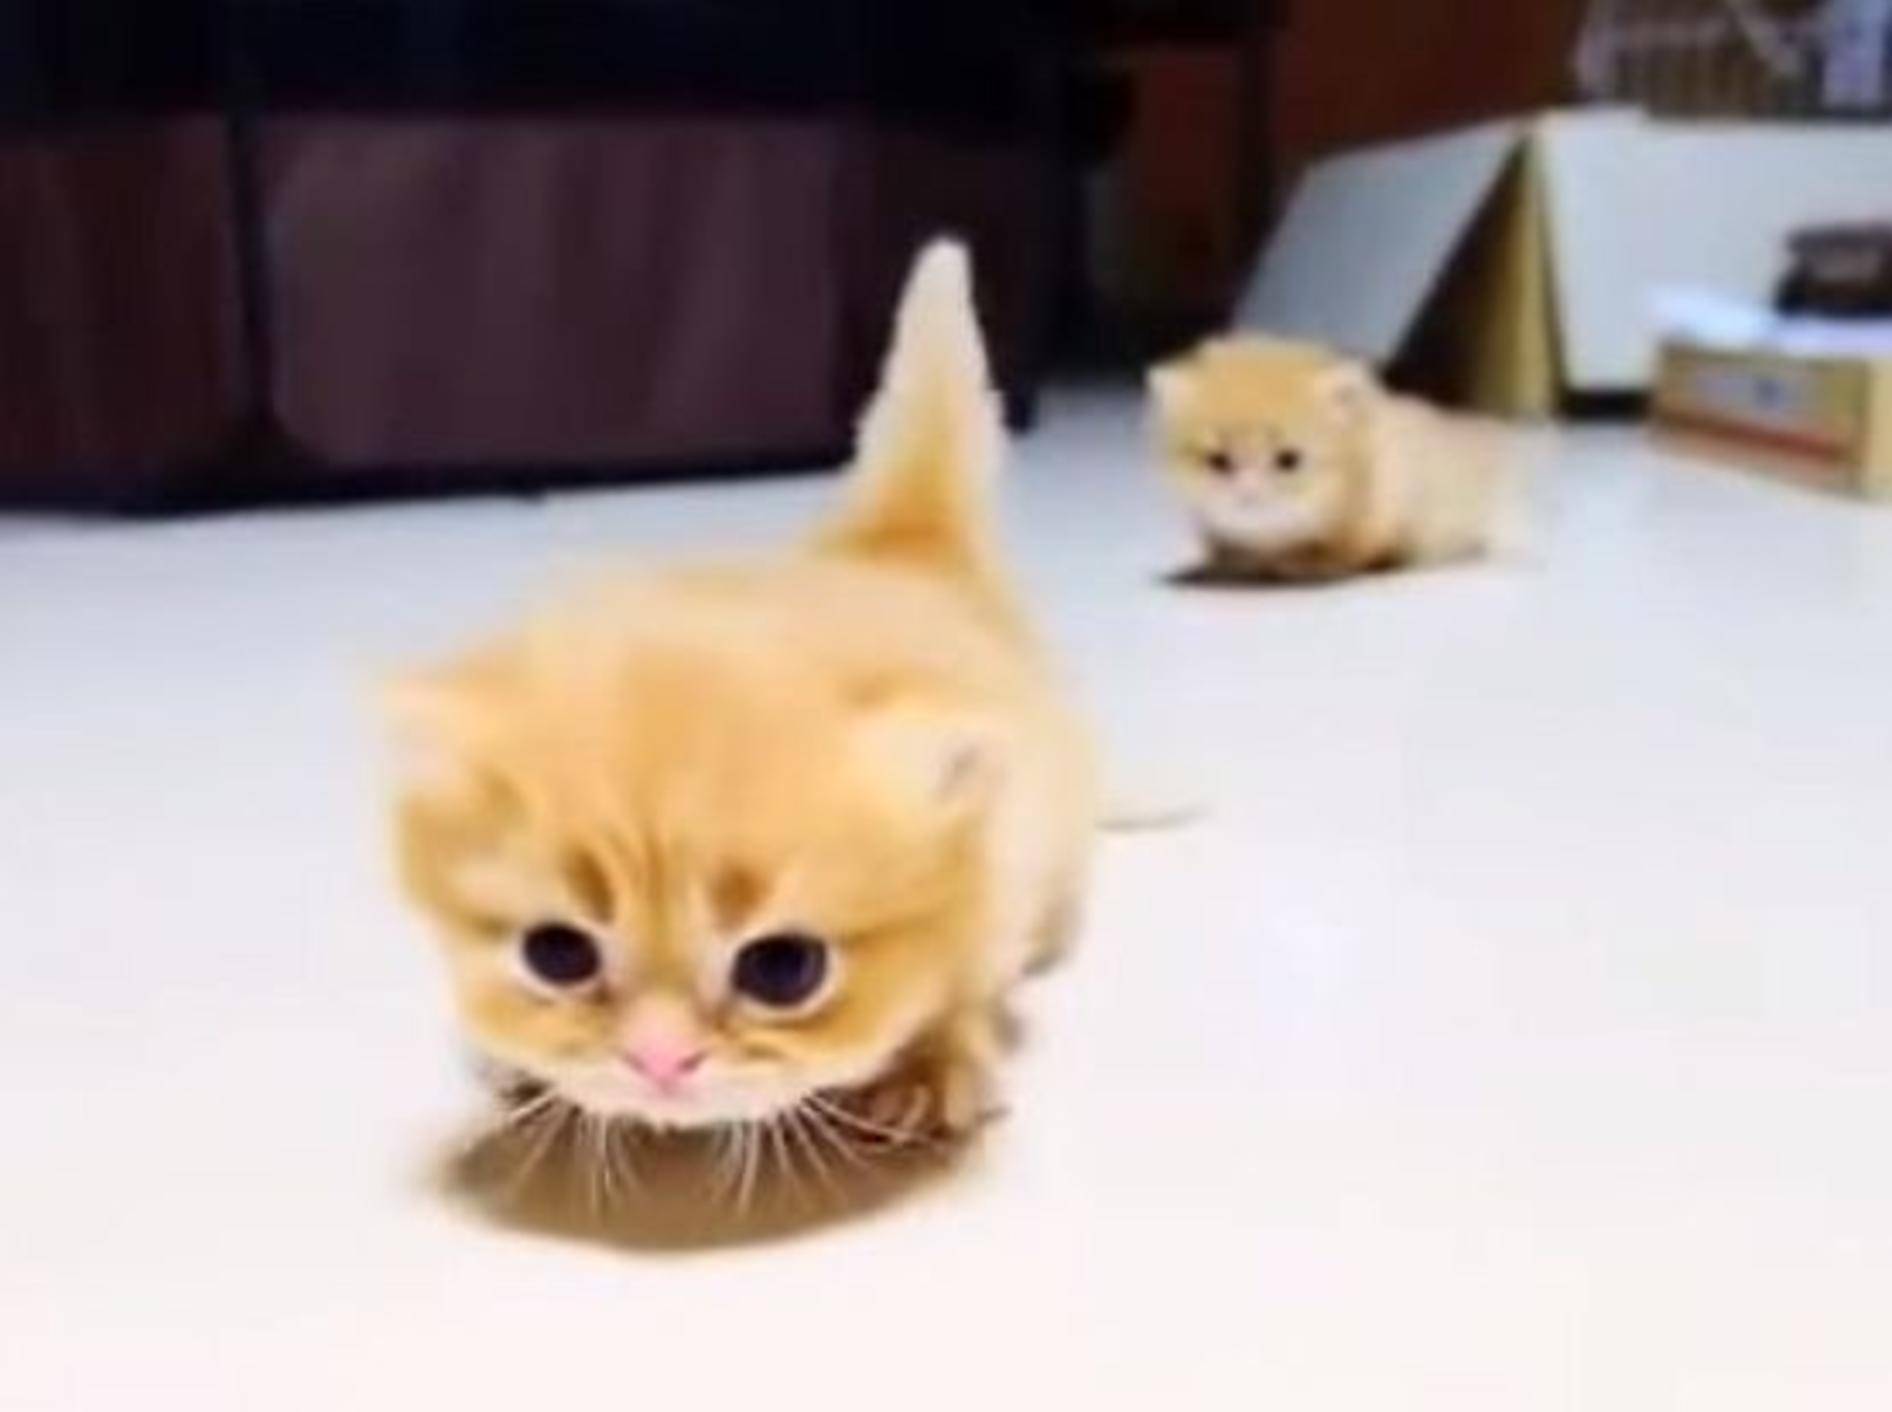 Rote Katzenbabys: "Laufen, wie geht das eigentlich?" – Bild: Youtube / AminalLove